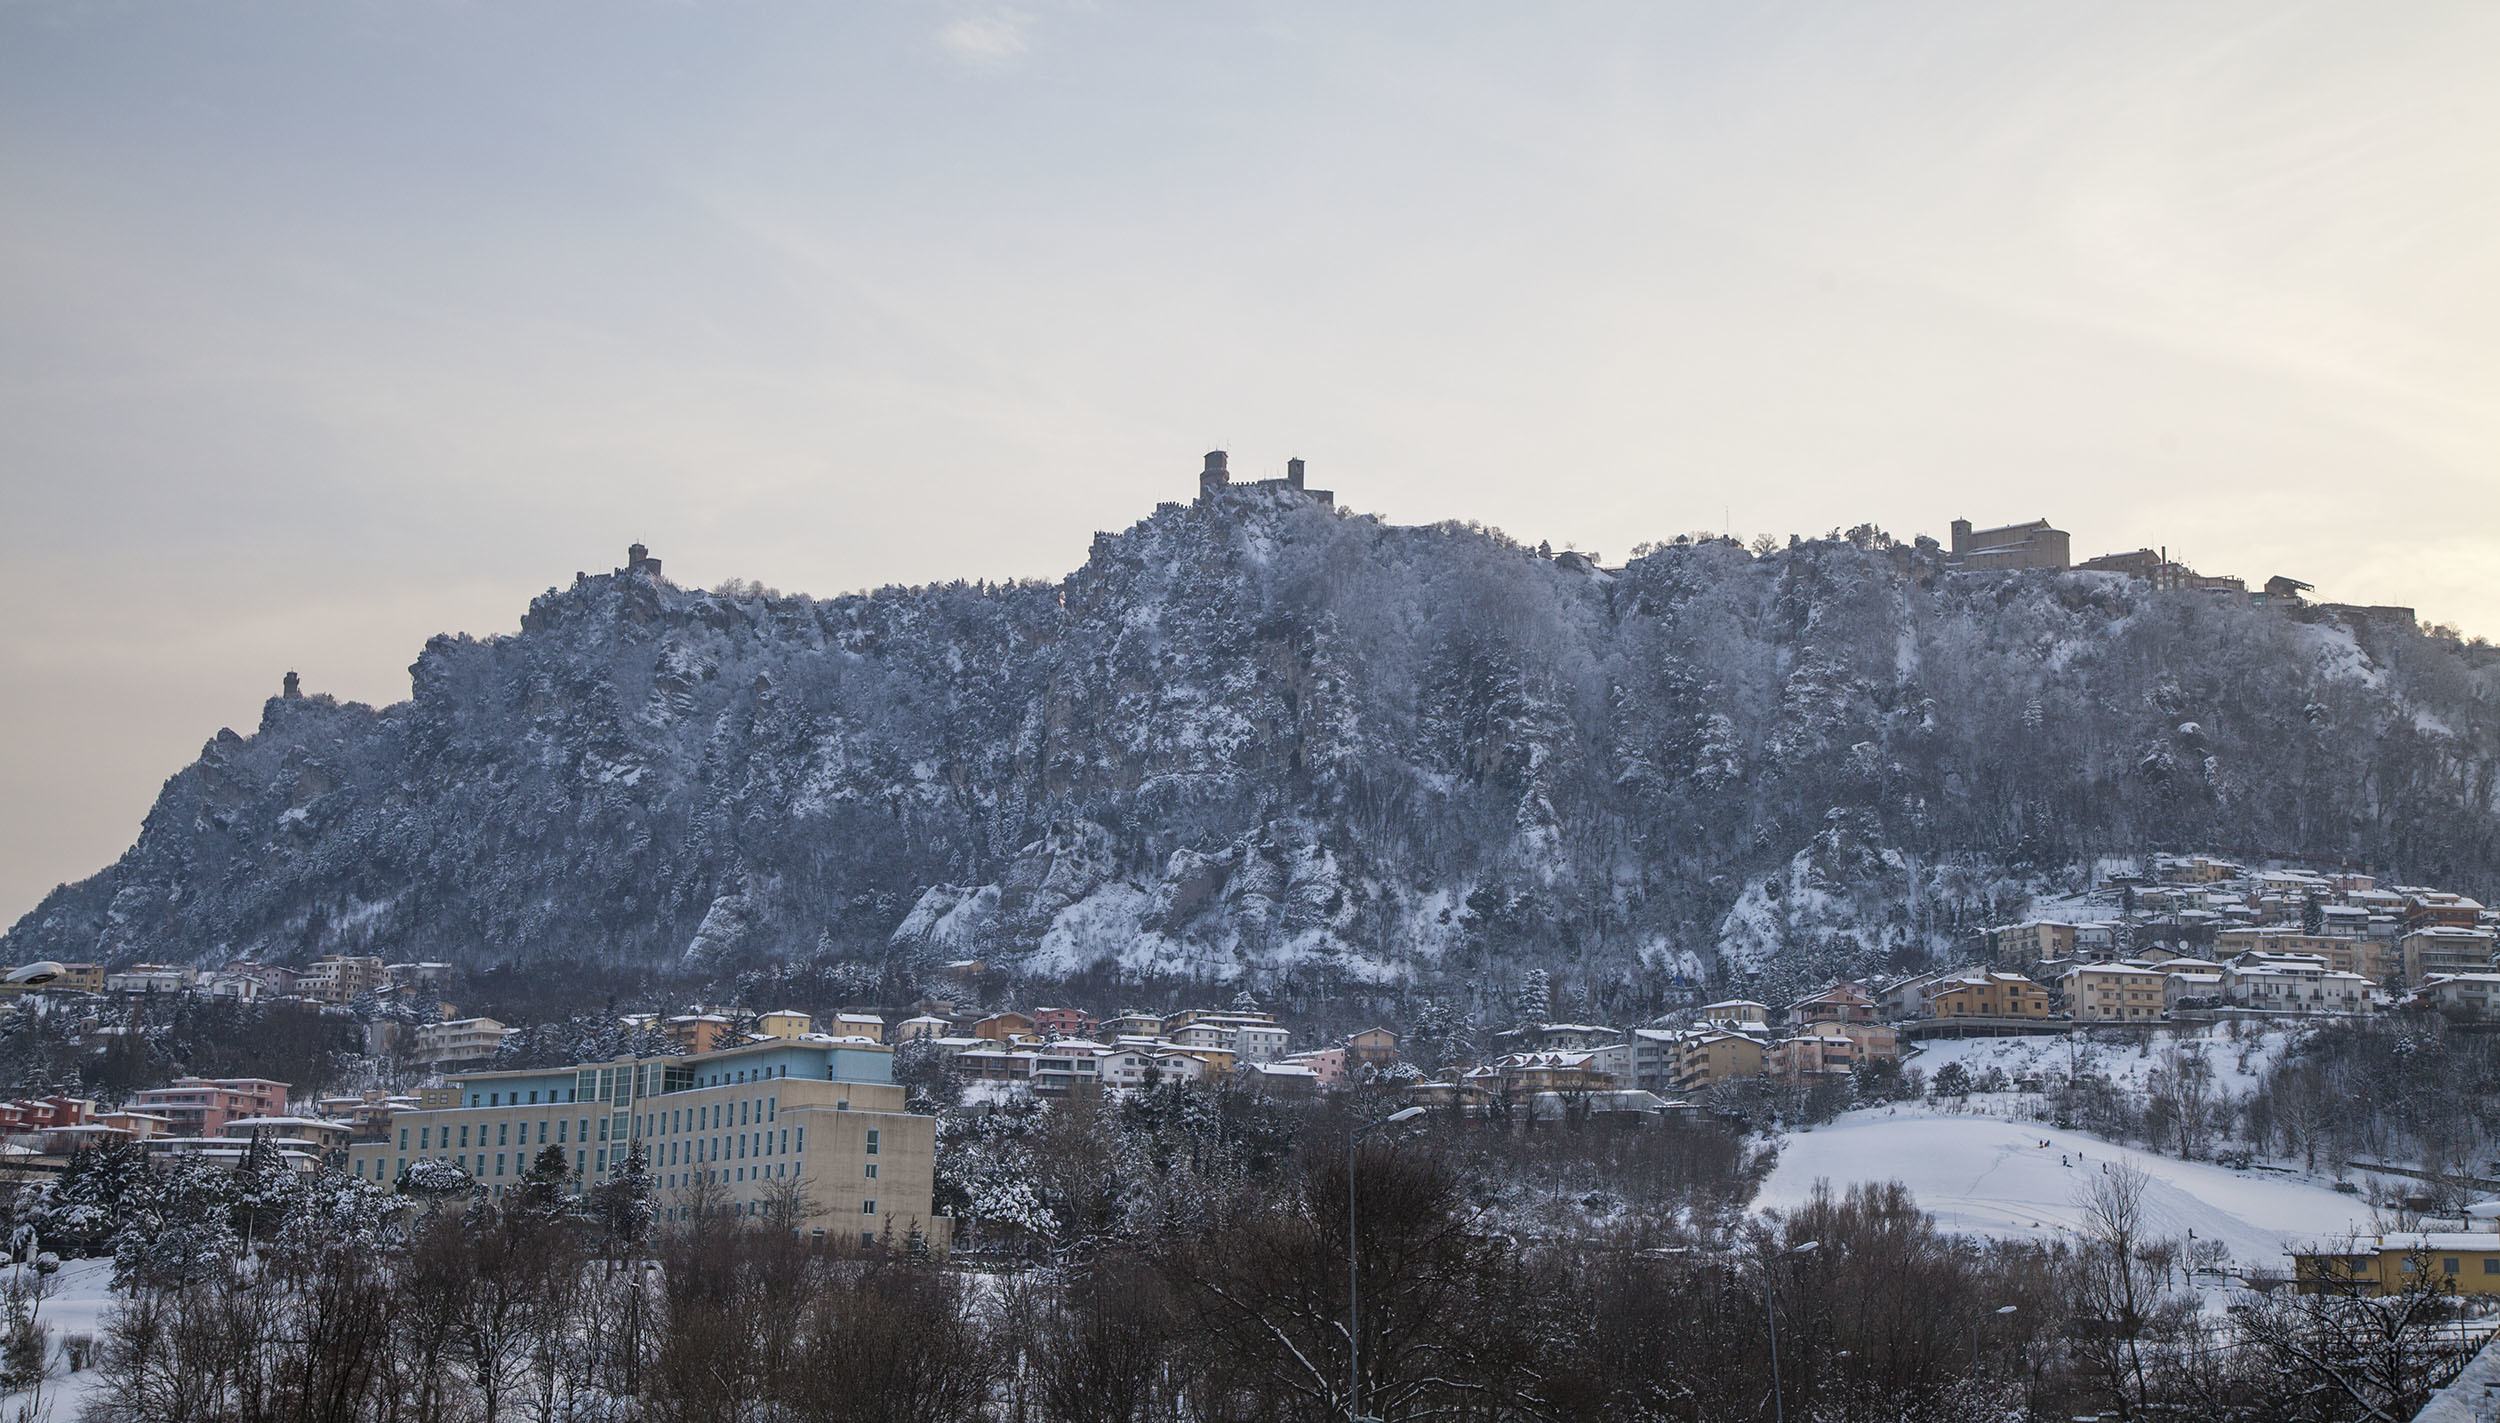 Citta di San Marino from Borgo Maggiore in winter